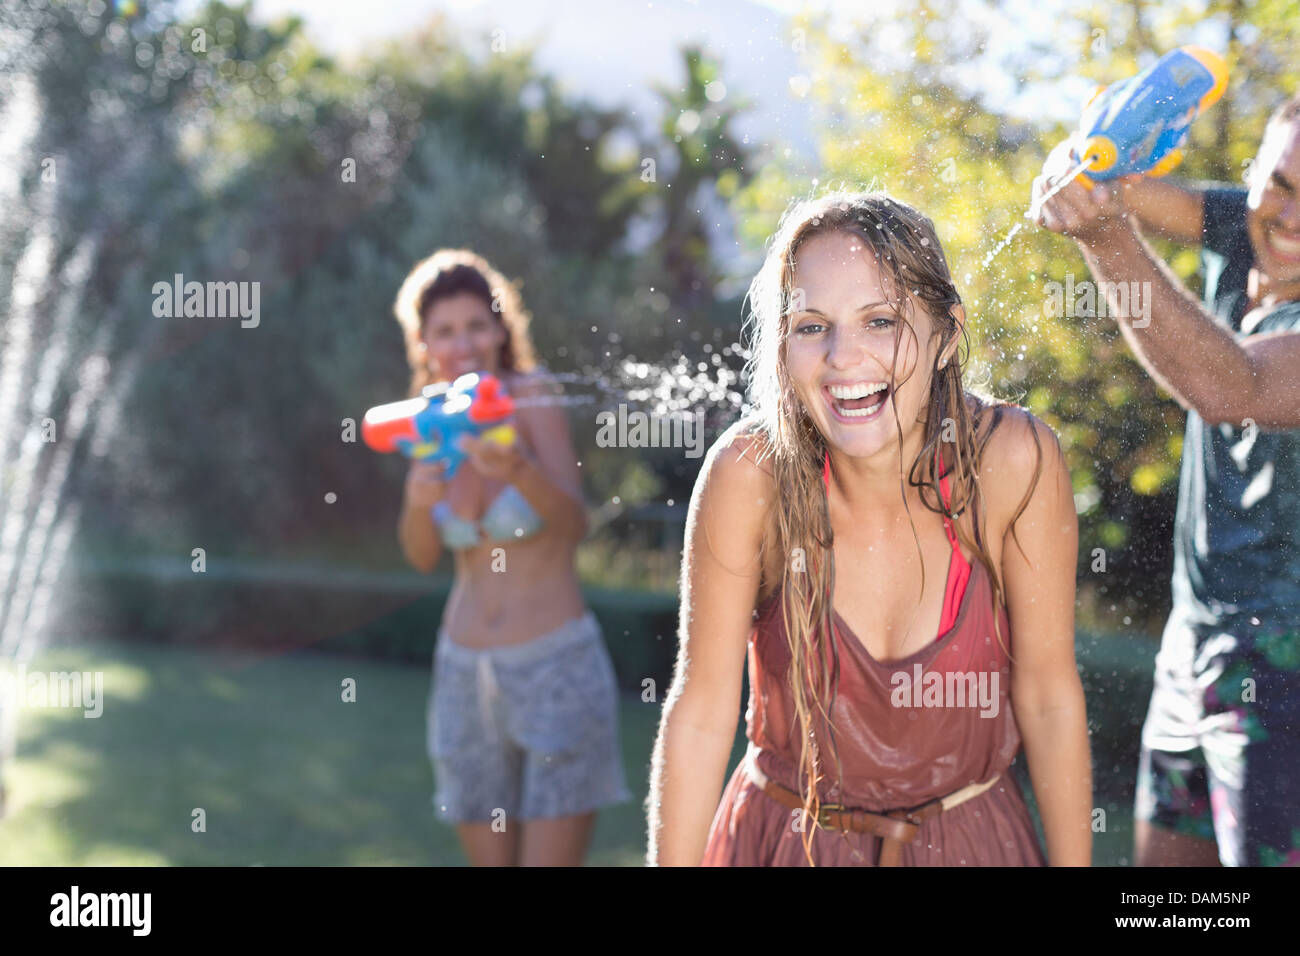 Jouer avec de l'eau amis guns in backyard Banque D'Images